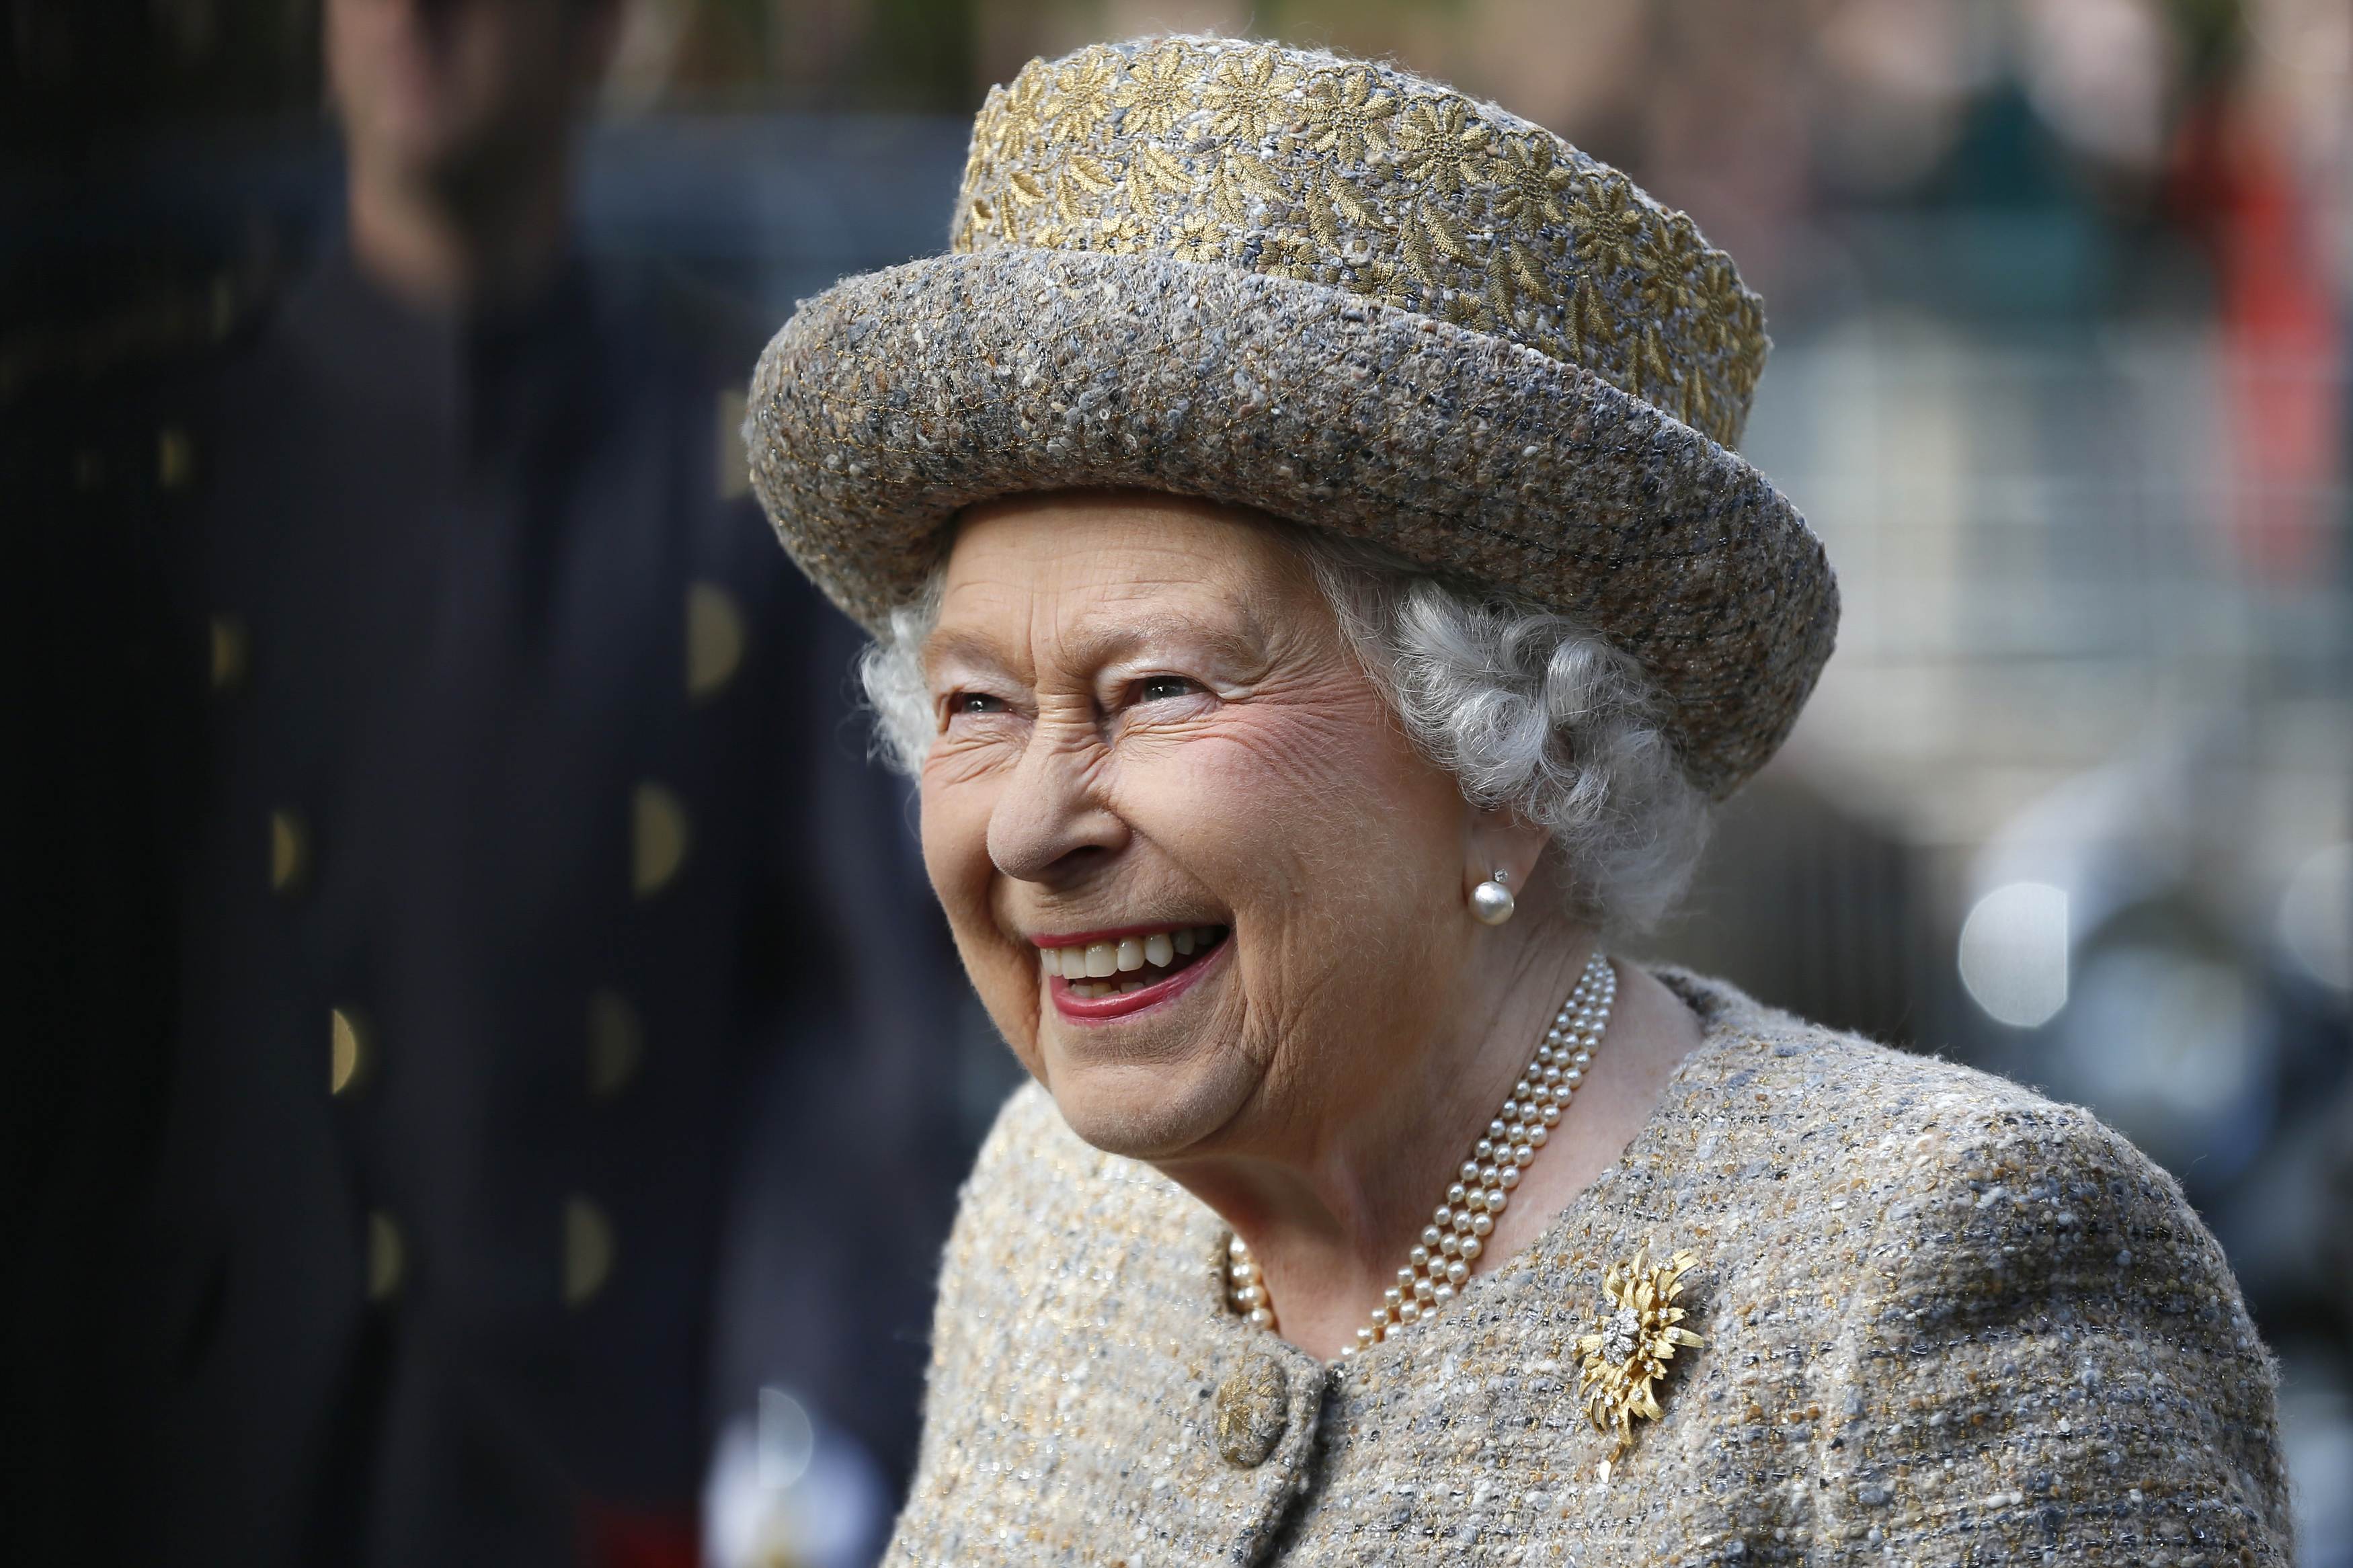 La reina Elizabeth II fotografiada llegando antes de la apertura del Flanders' Fields Memorial Garden en Wellington Barracks, el 6 de noviembre de 2014 en Londres, Inglaterra. | Foto: Getty Images